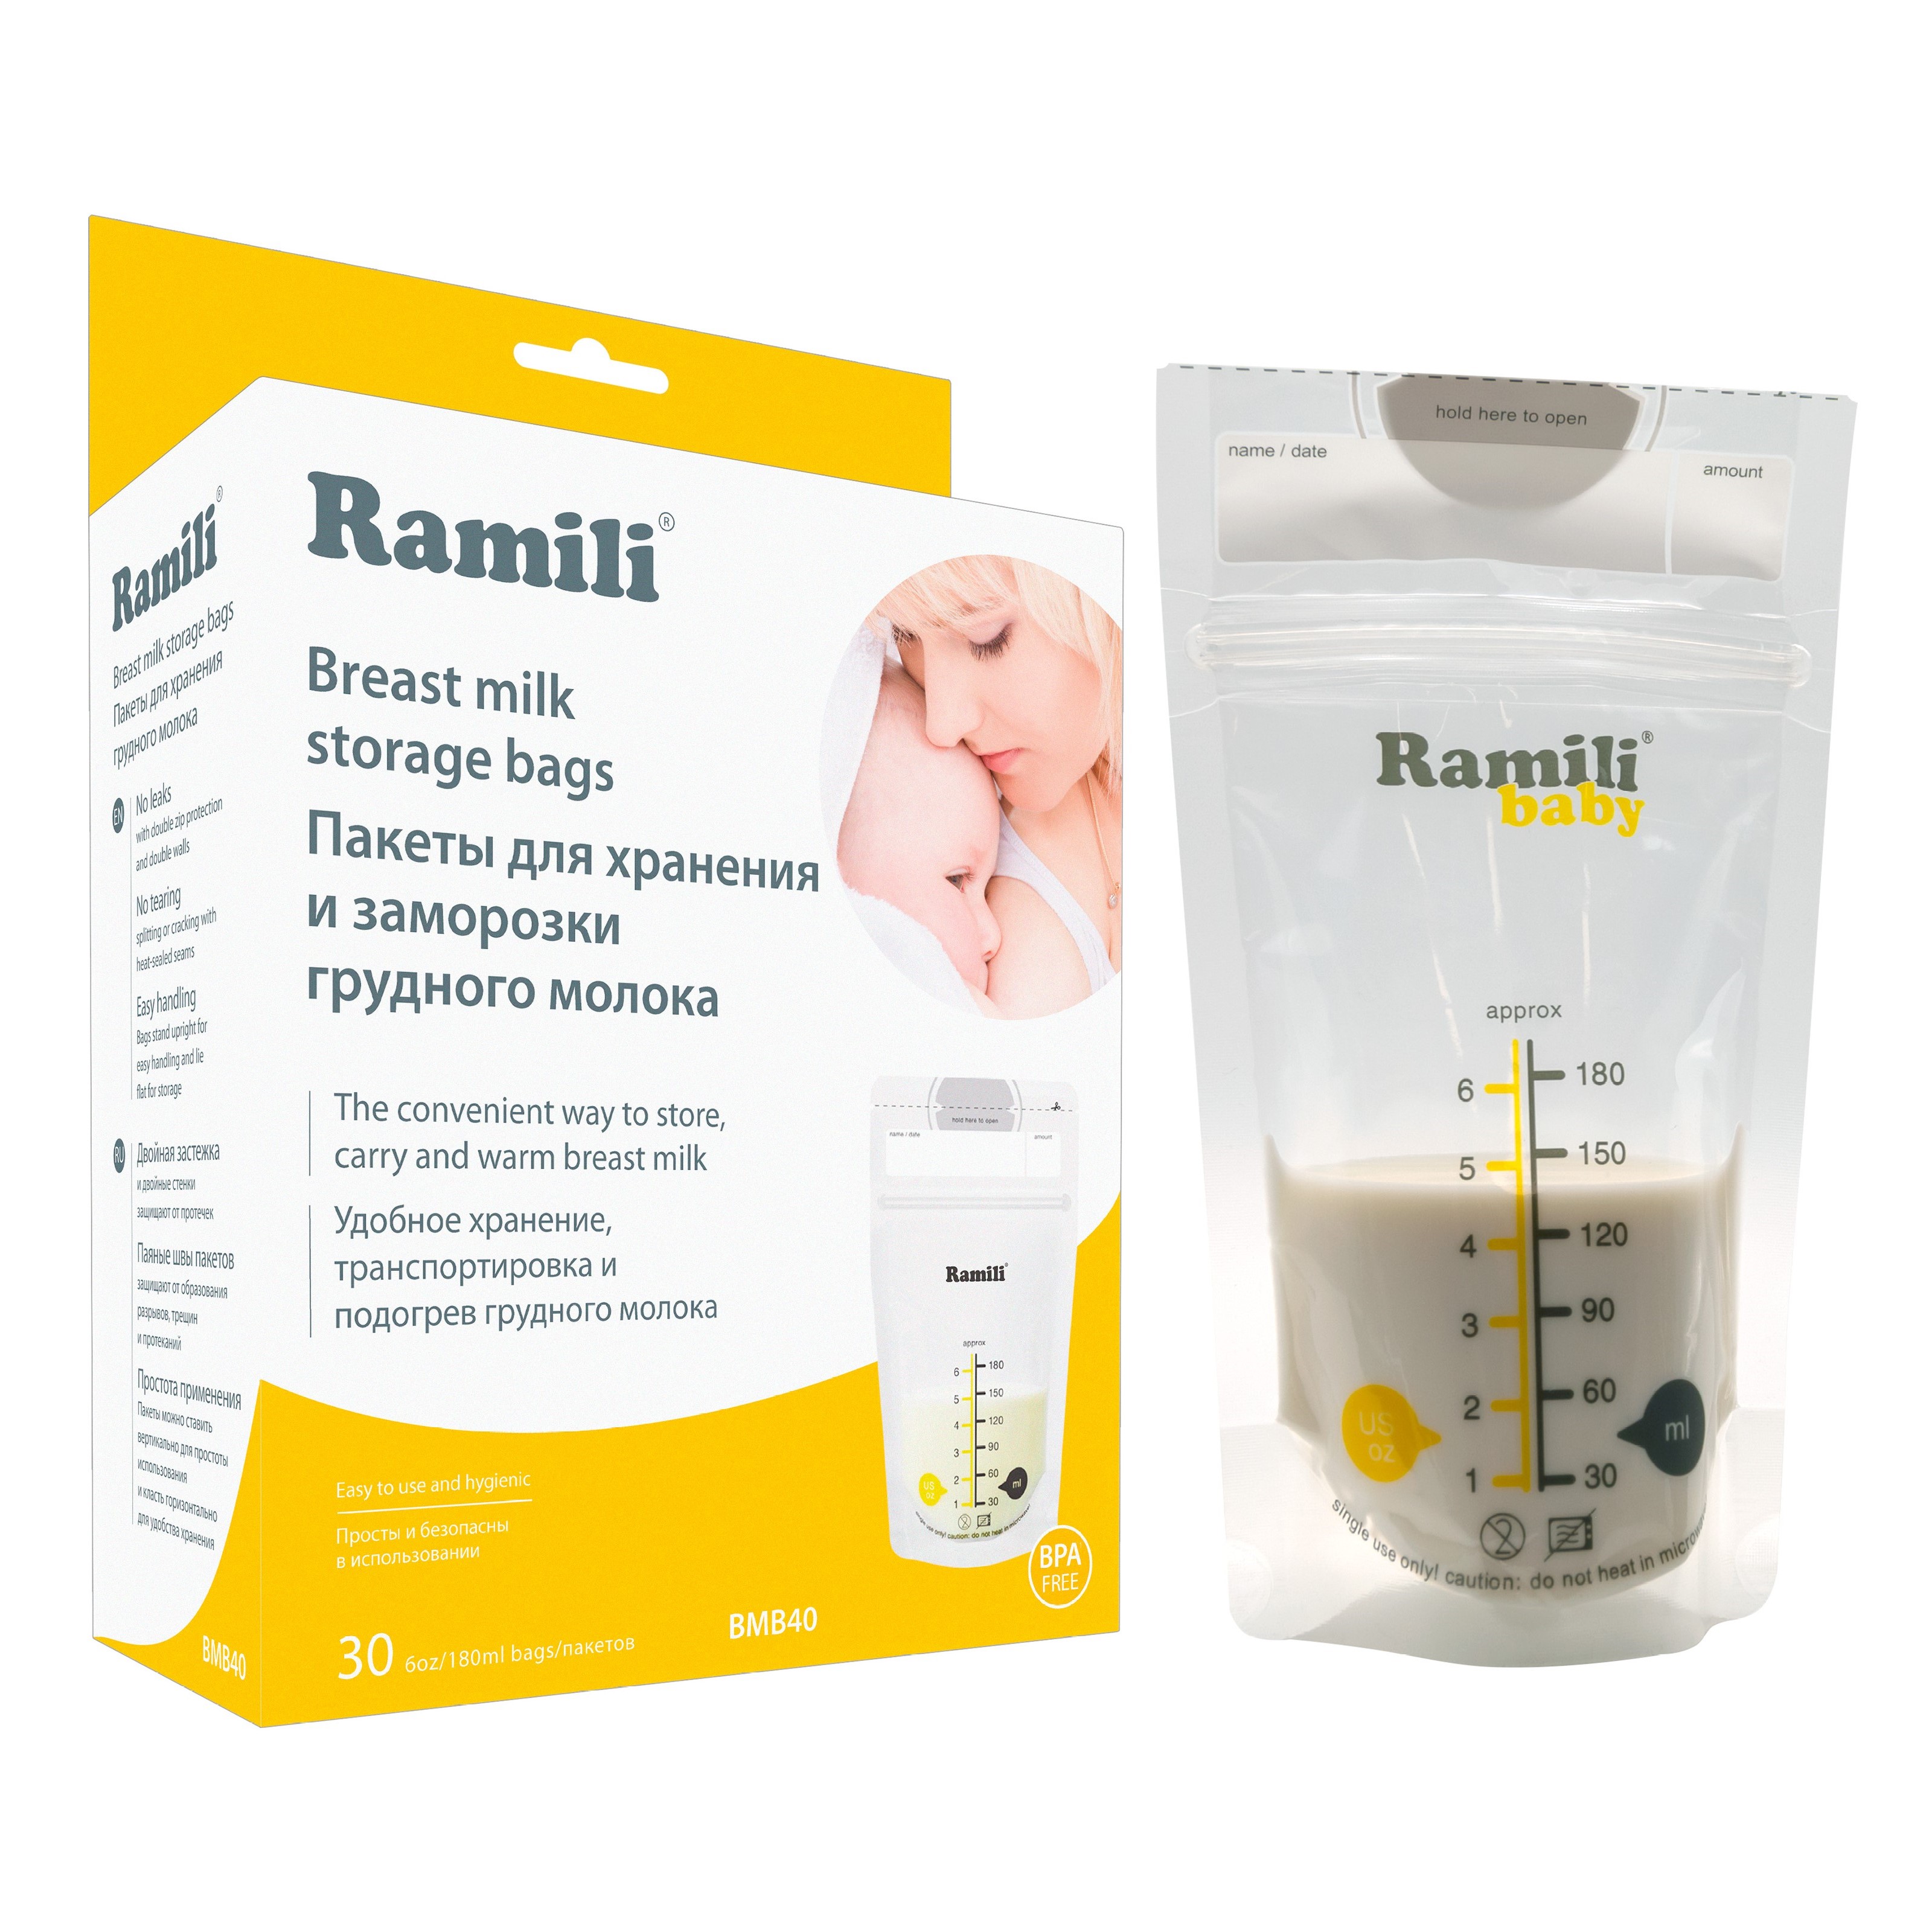 Пакеты для хранения и заморозки грудного молока Ramili Baby BMB40 пакеты для заморозки и хранения грудного молока pigeon 180 мл 25 шт animal